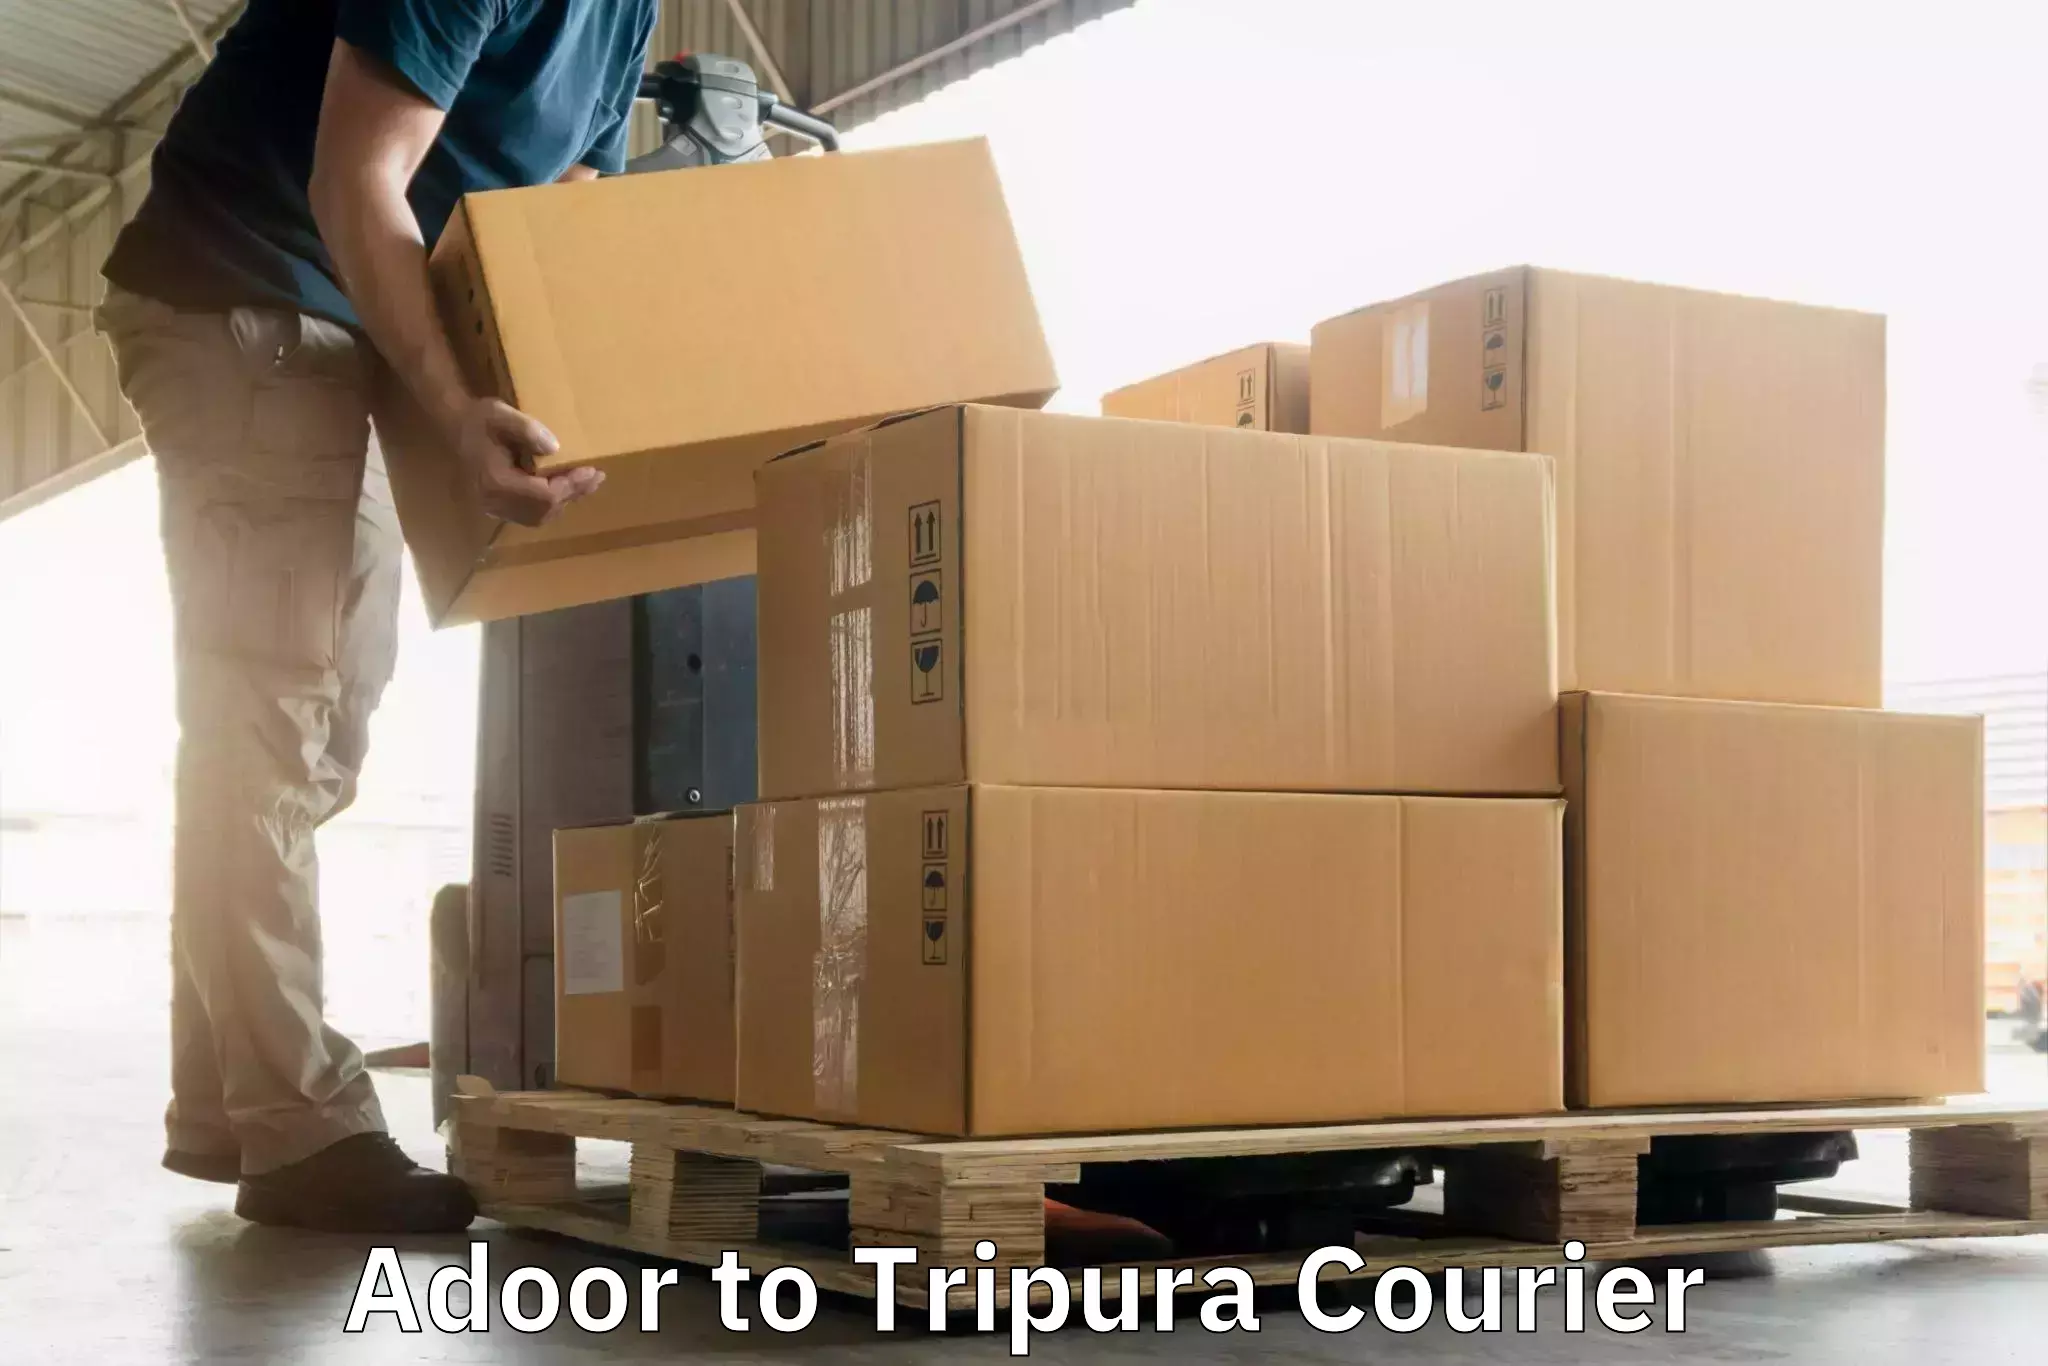 Multi-service courier options Adoor to IIIT Agartala